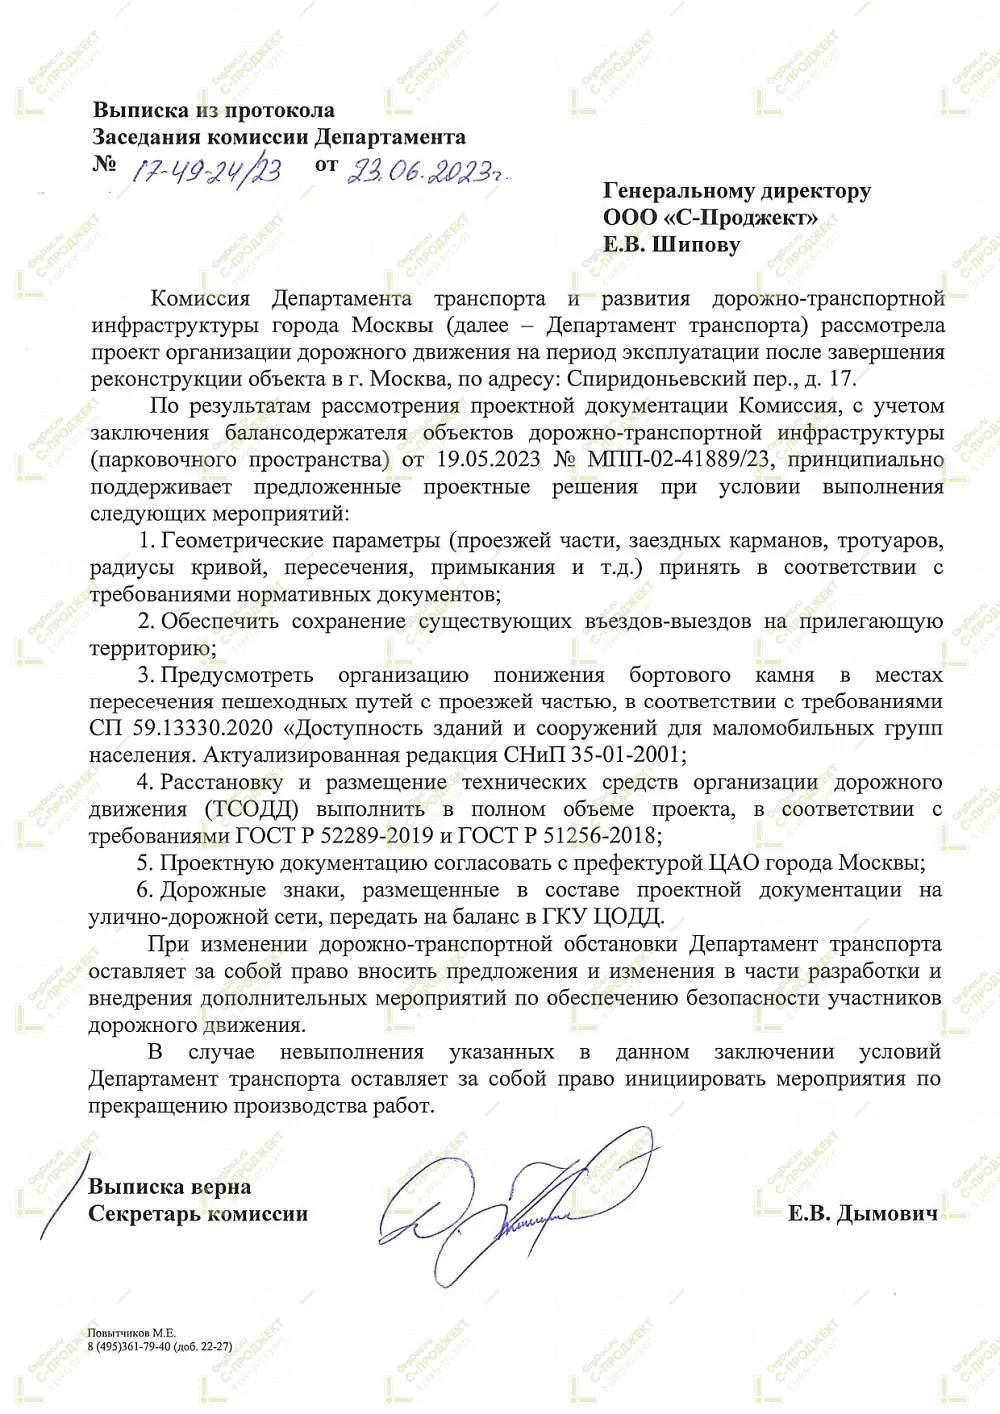 Пример согласования ПОДД в Департаменте транспорта Москвы